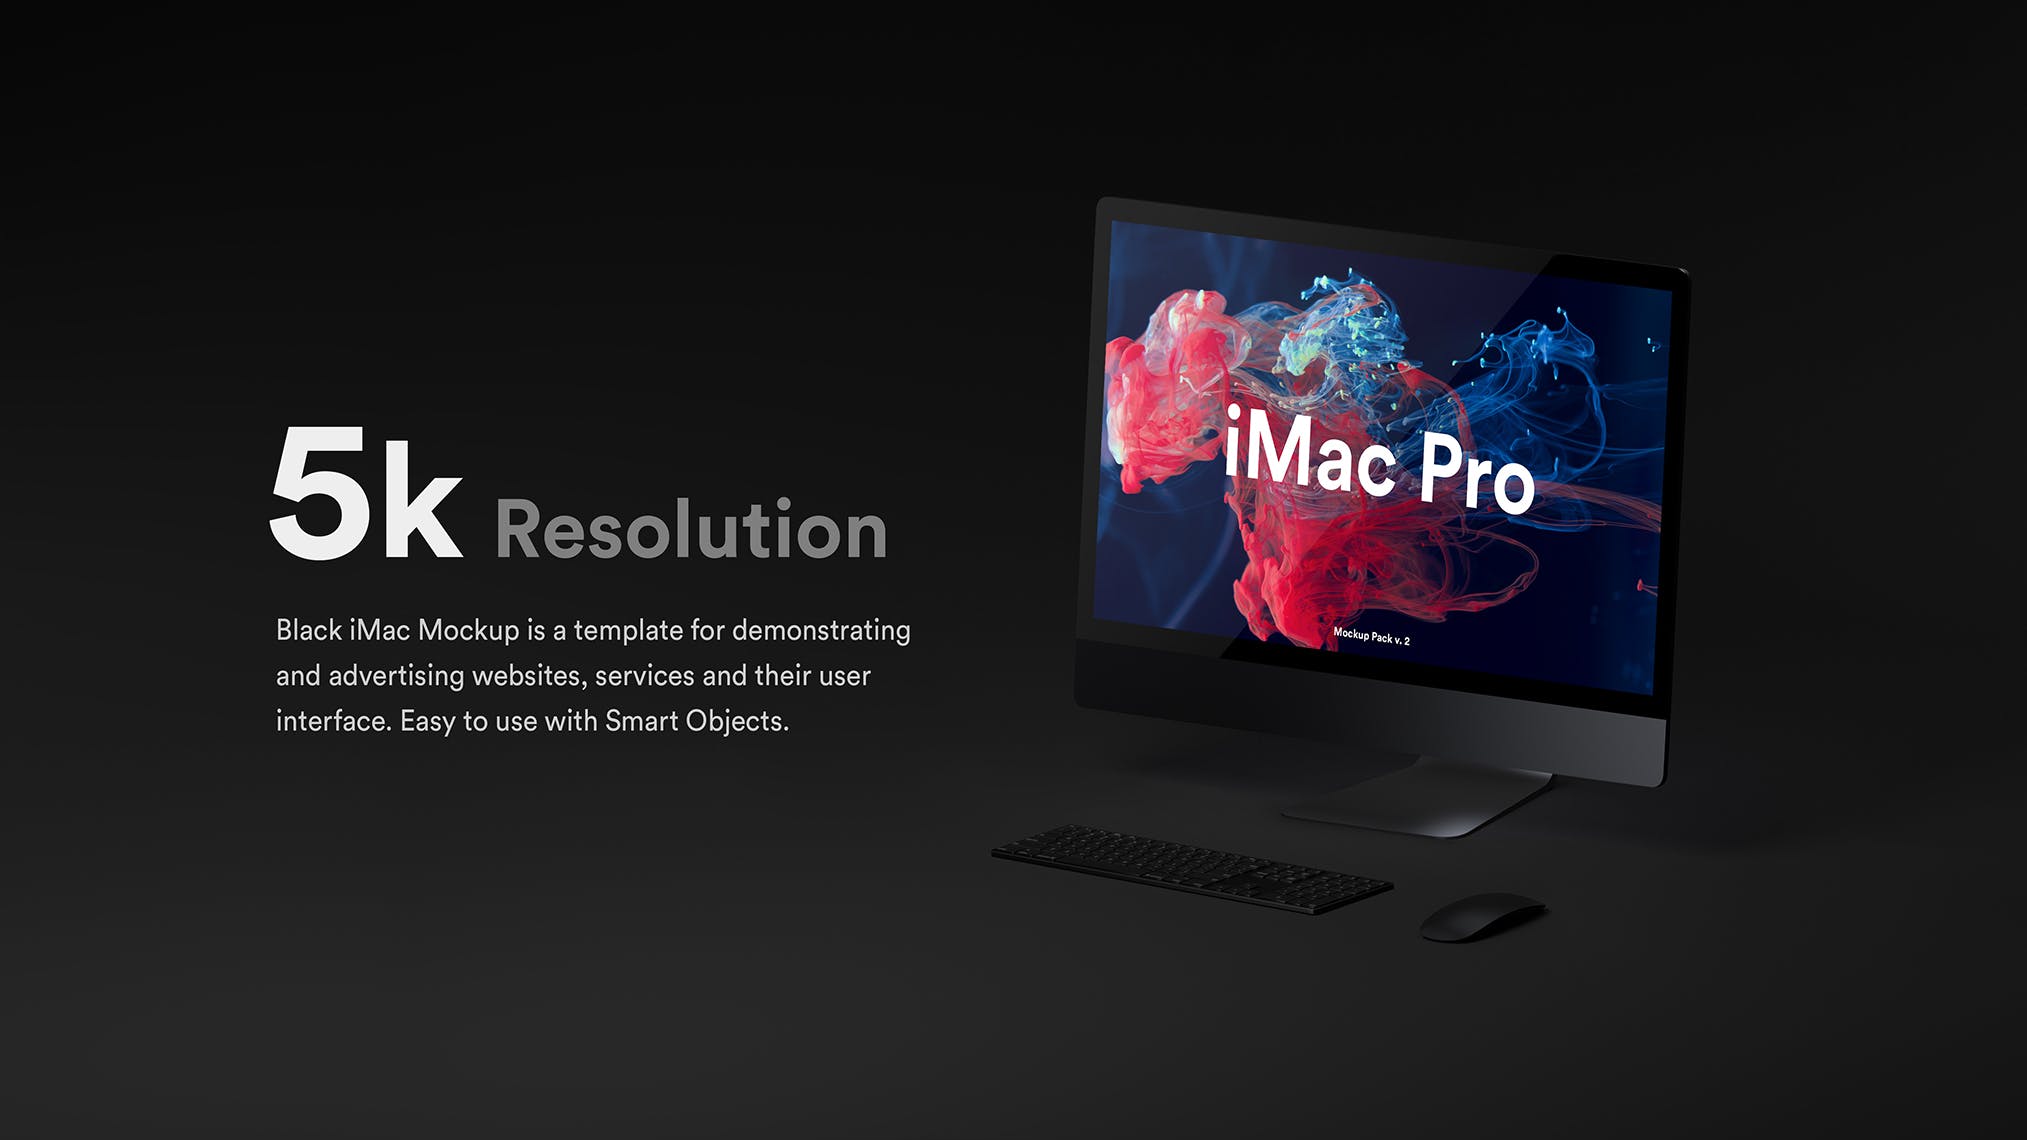 酷黑背景iMac Pro一体机电脑样机模板 Dark iMac Pro Mockup插图(14)